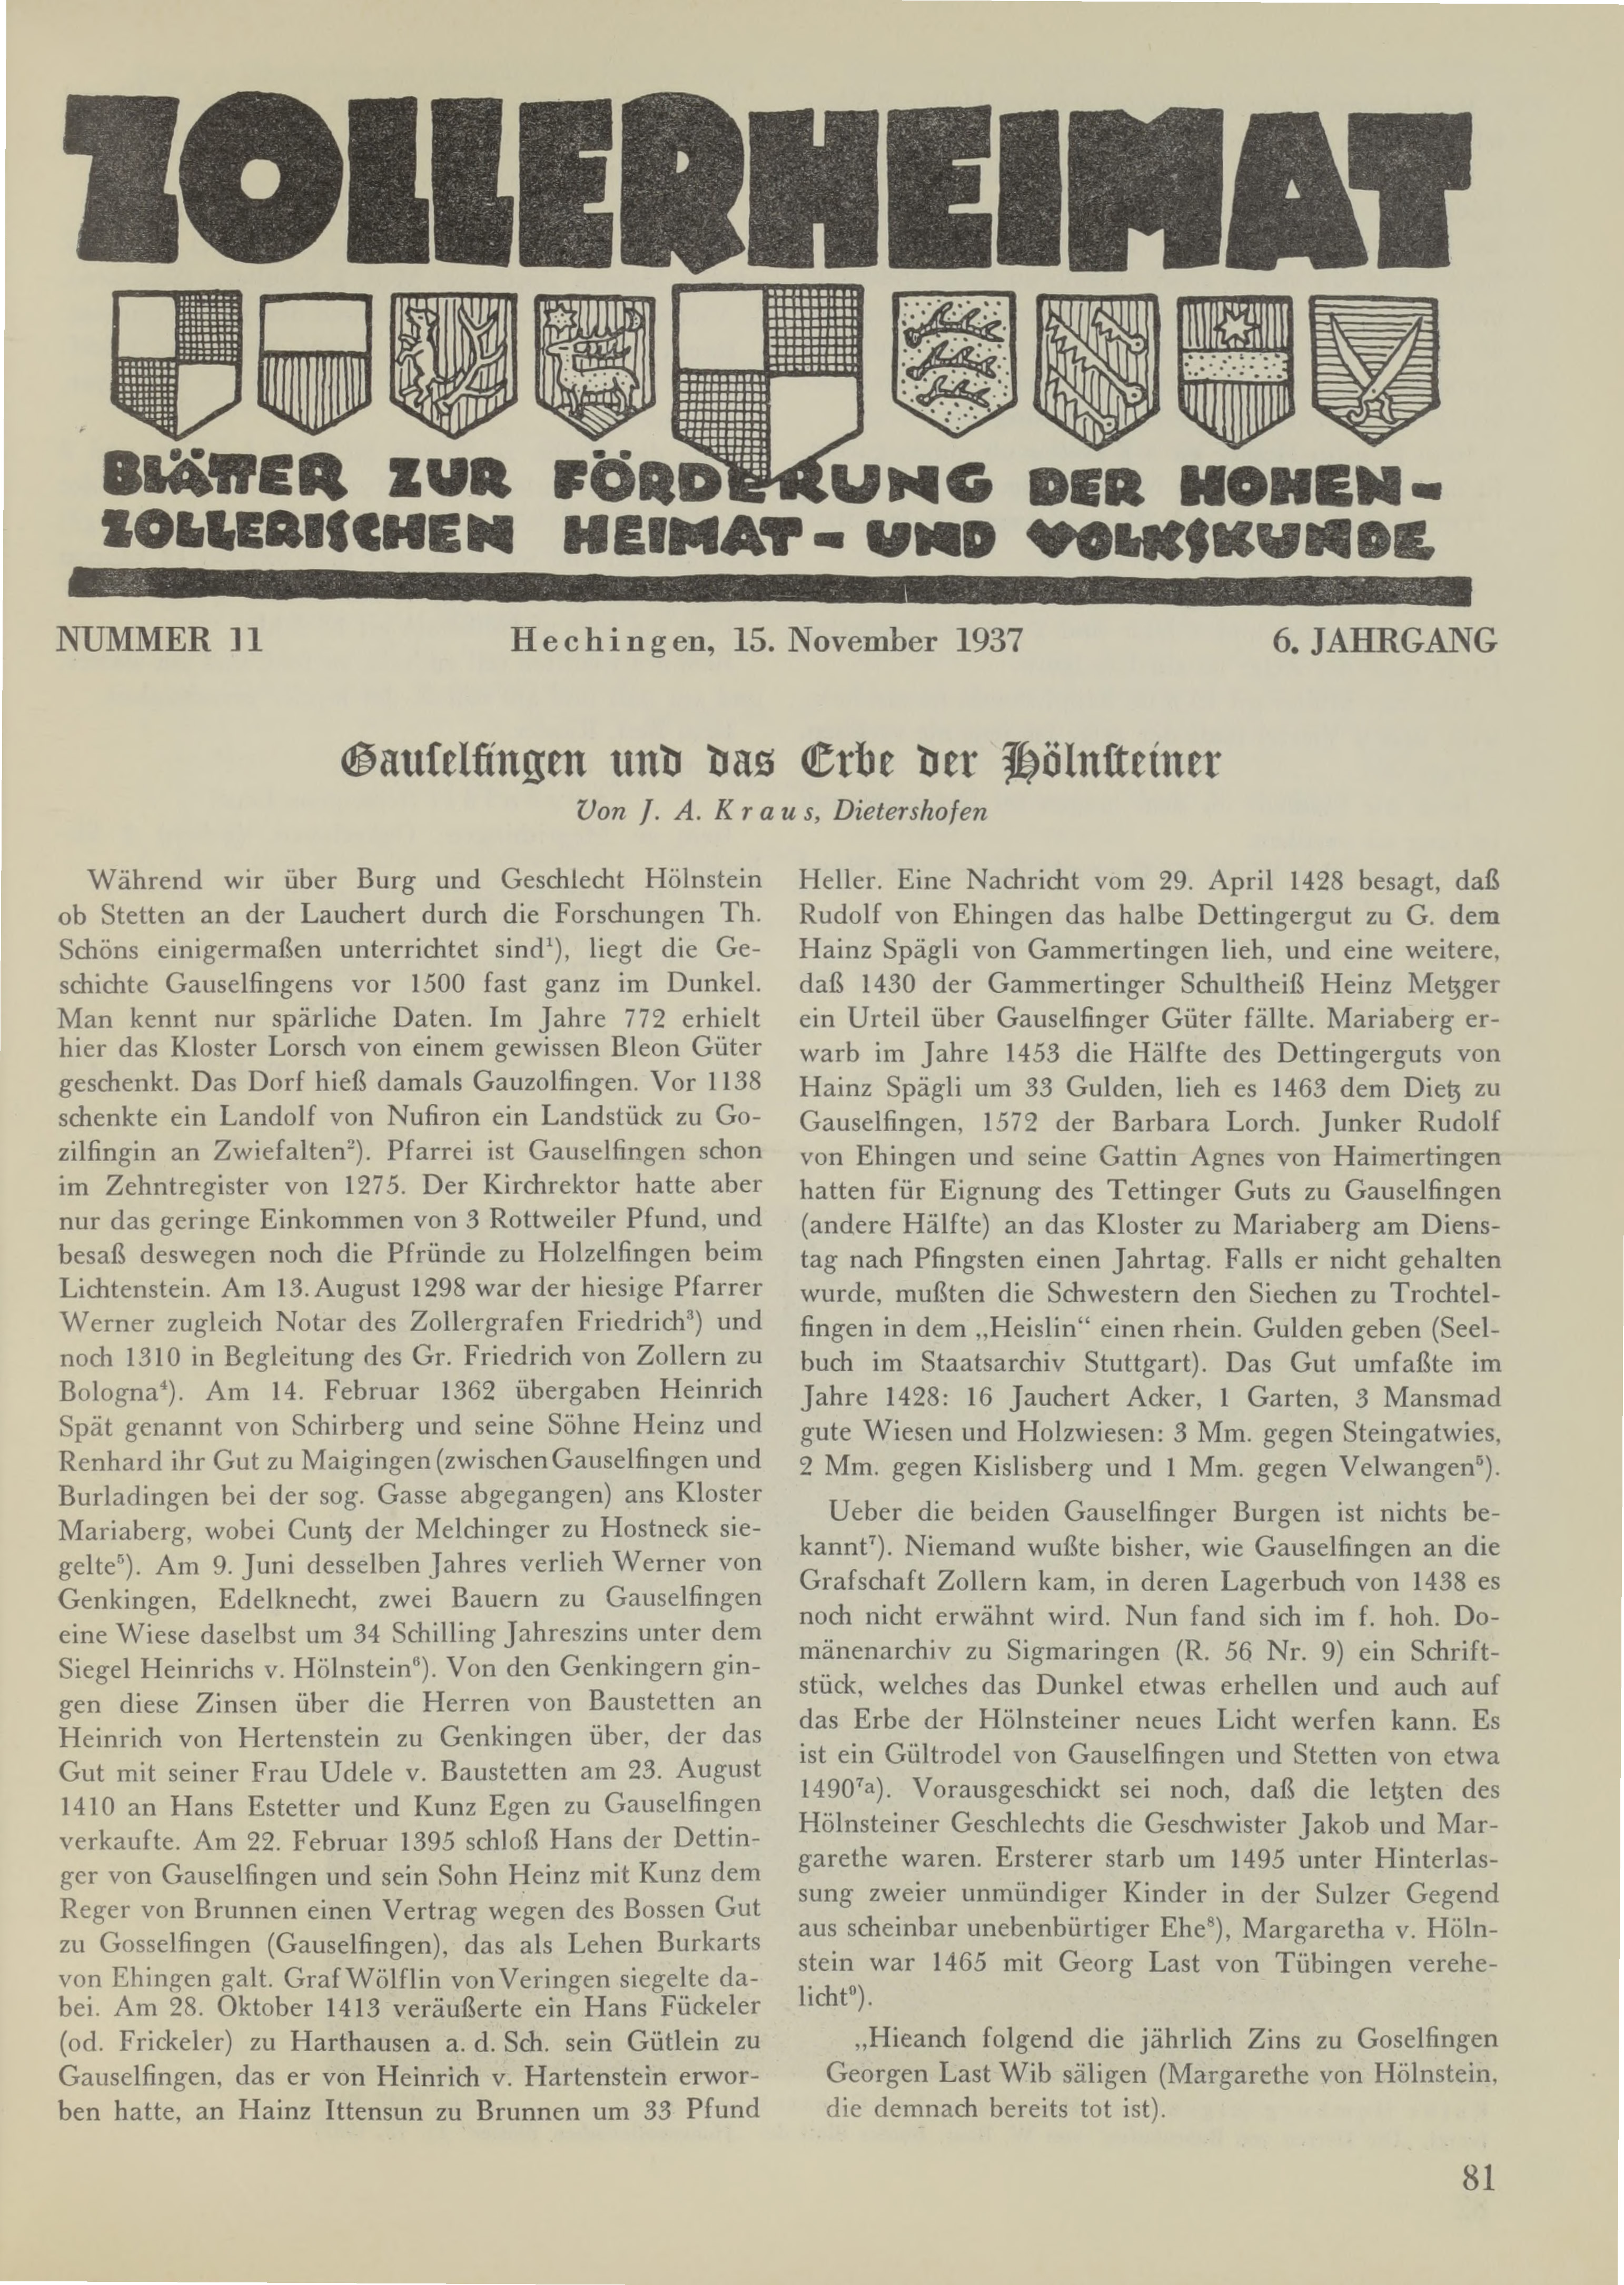                     Ansehen Bd. 6 Nr. 11 (1937): Zollerheimat
                